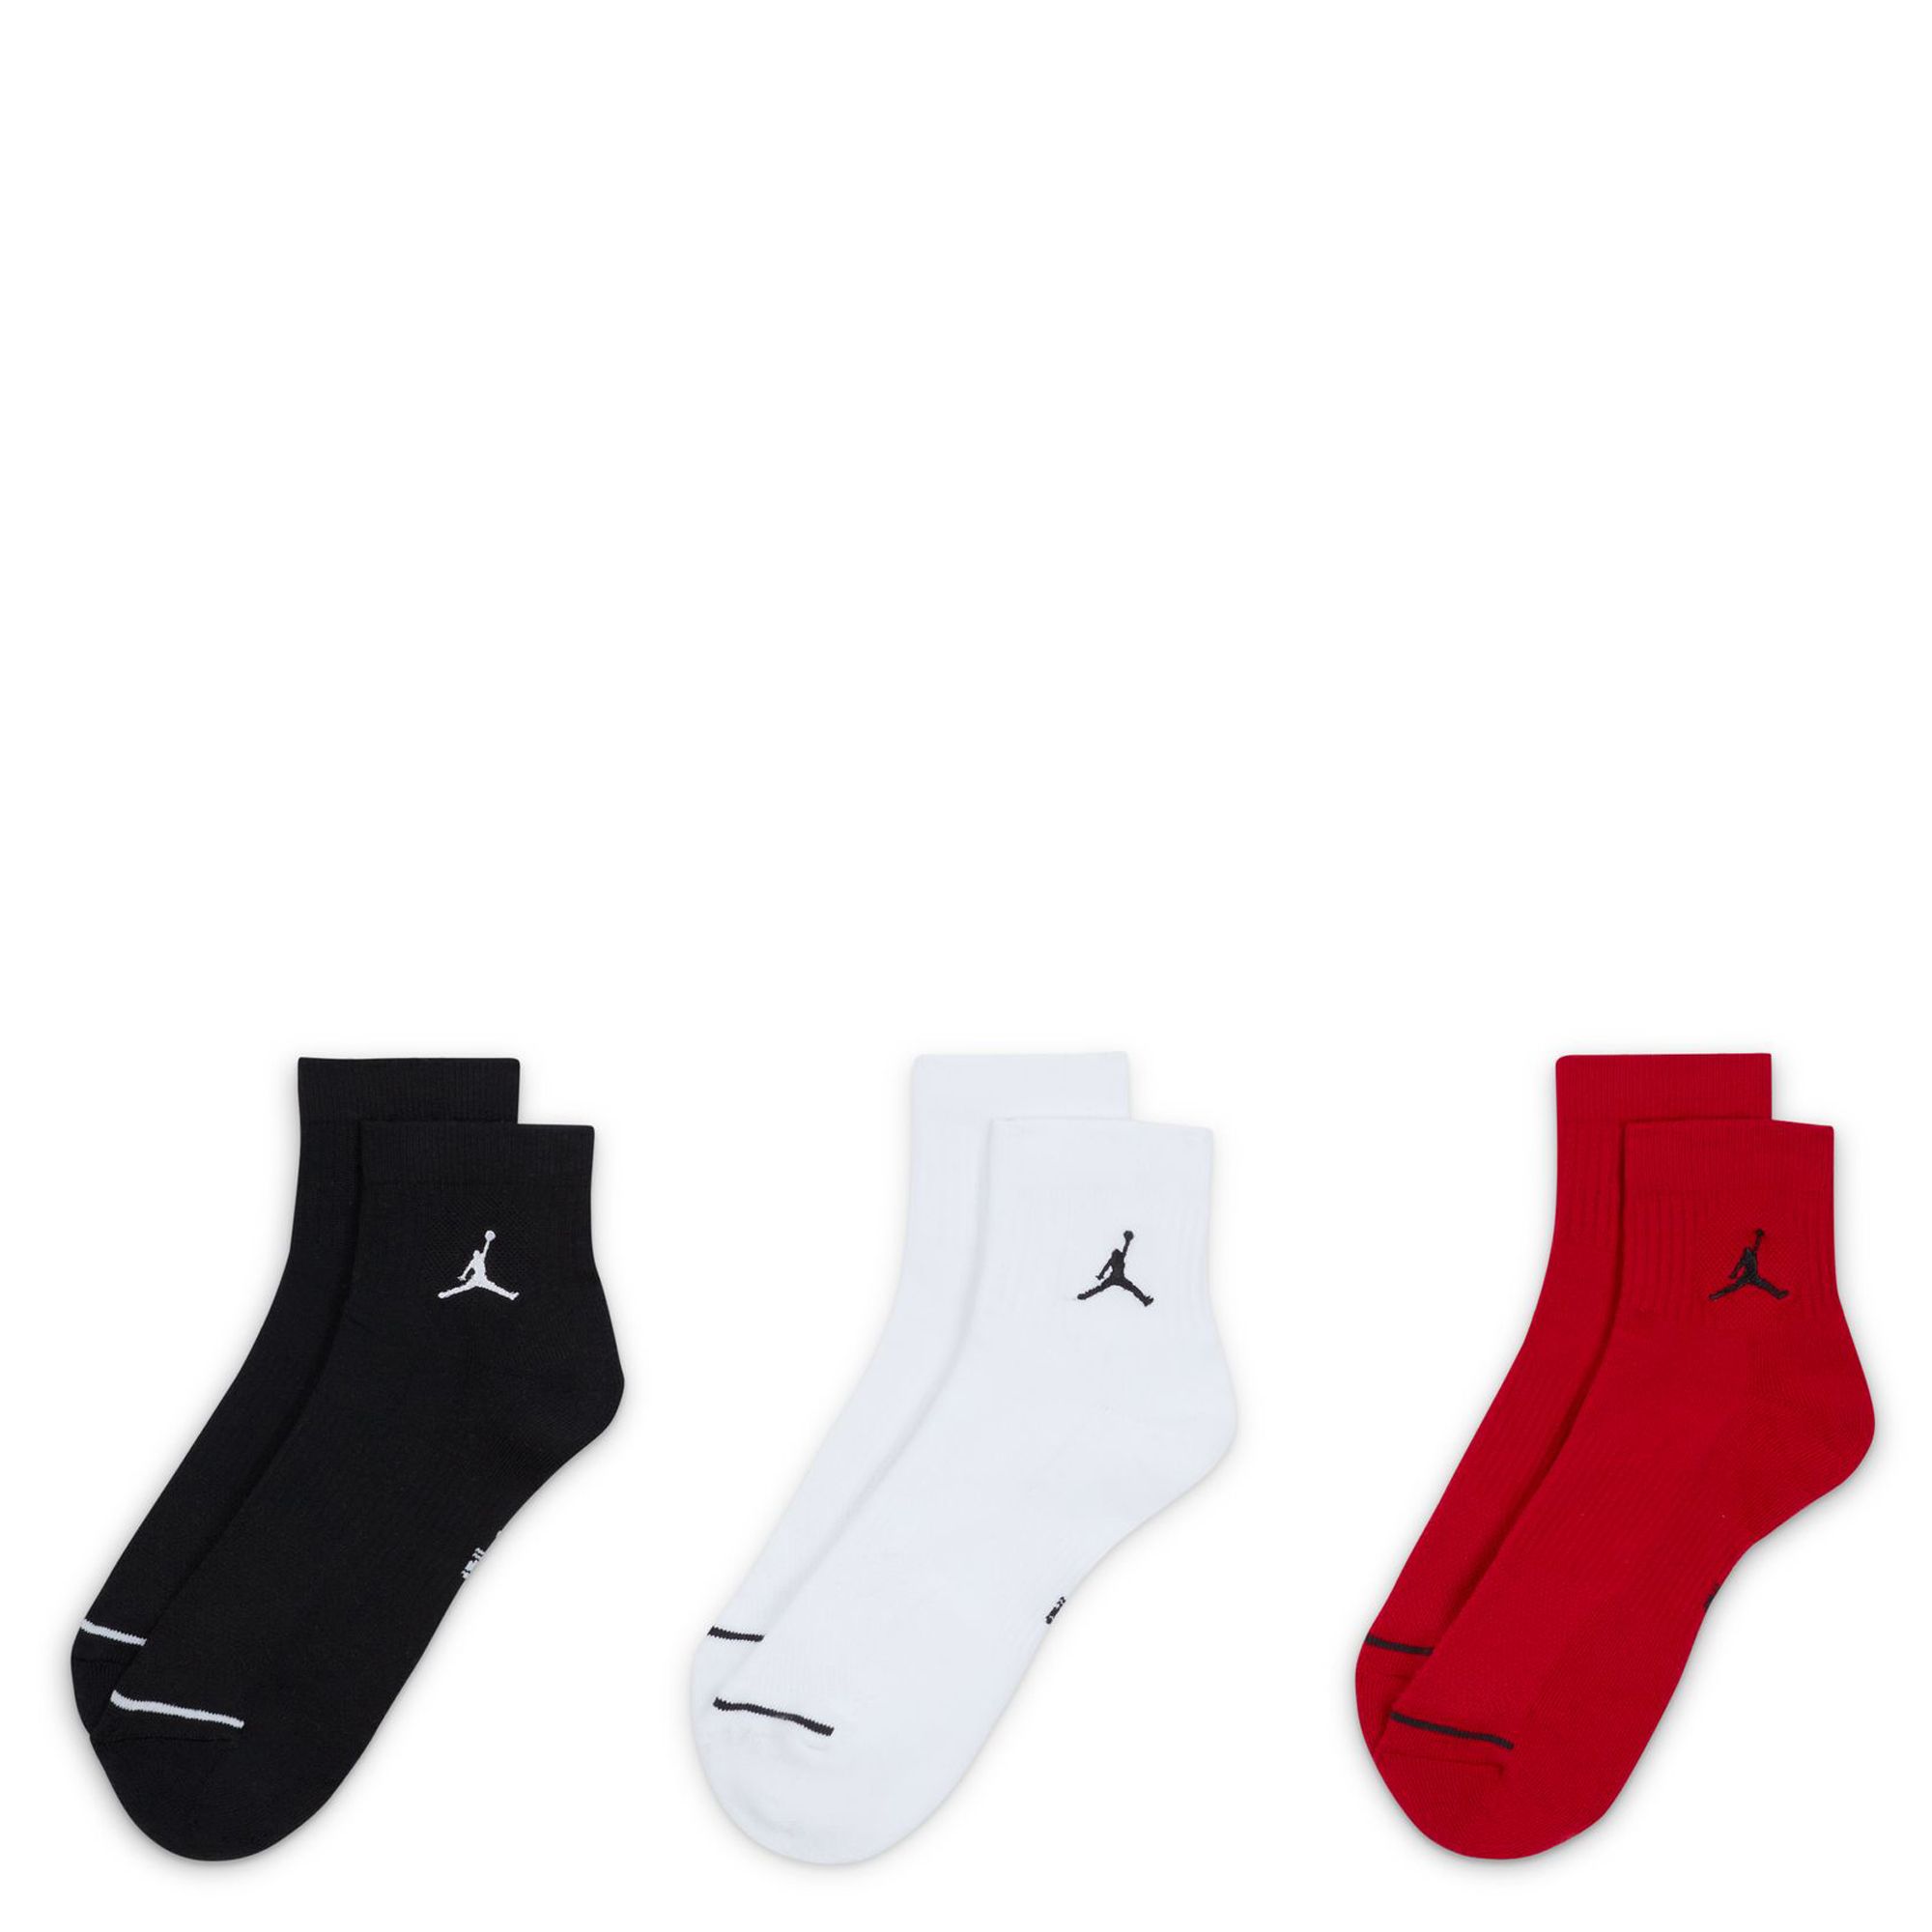 JORDAN Everyday Ankle Socks (3 Pairs) DX9655 902 - Shiekh